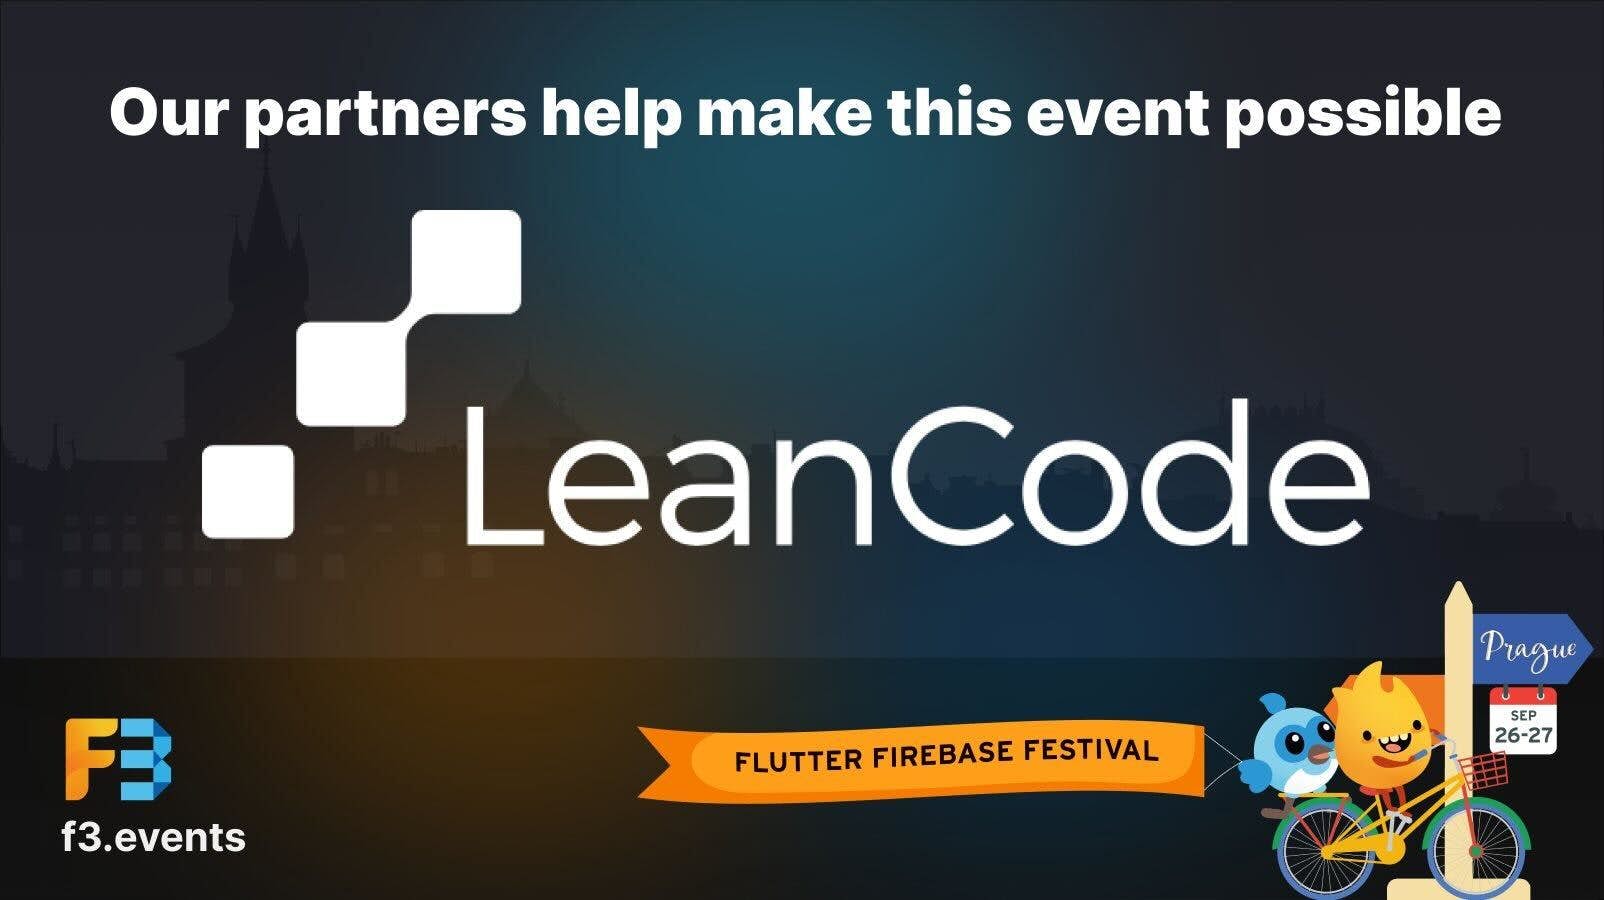 LeanCode is a partner of Flutter Firebase Festival